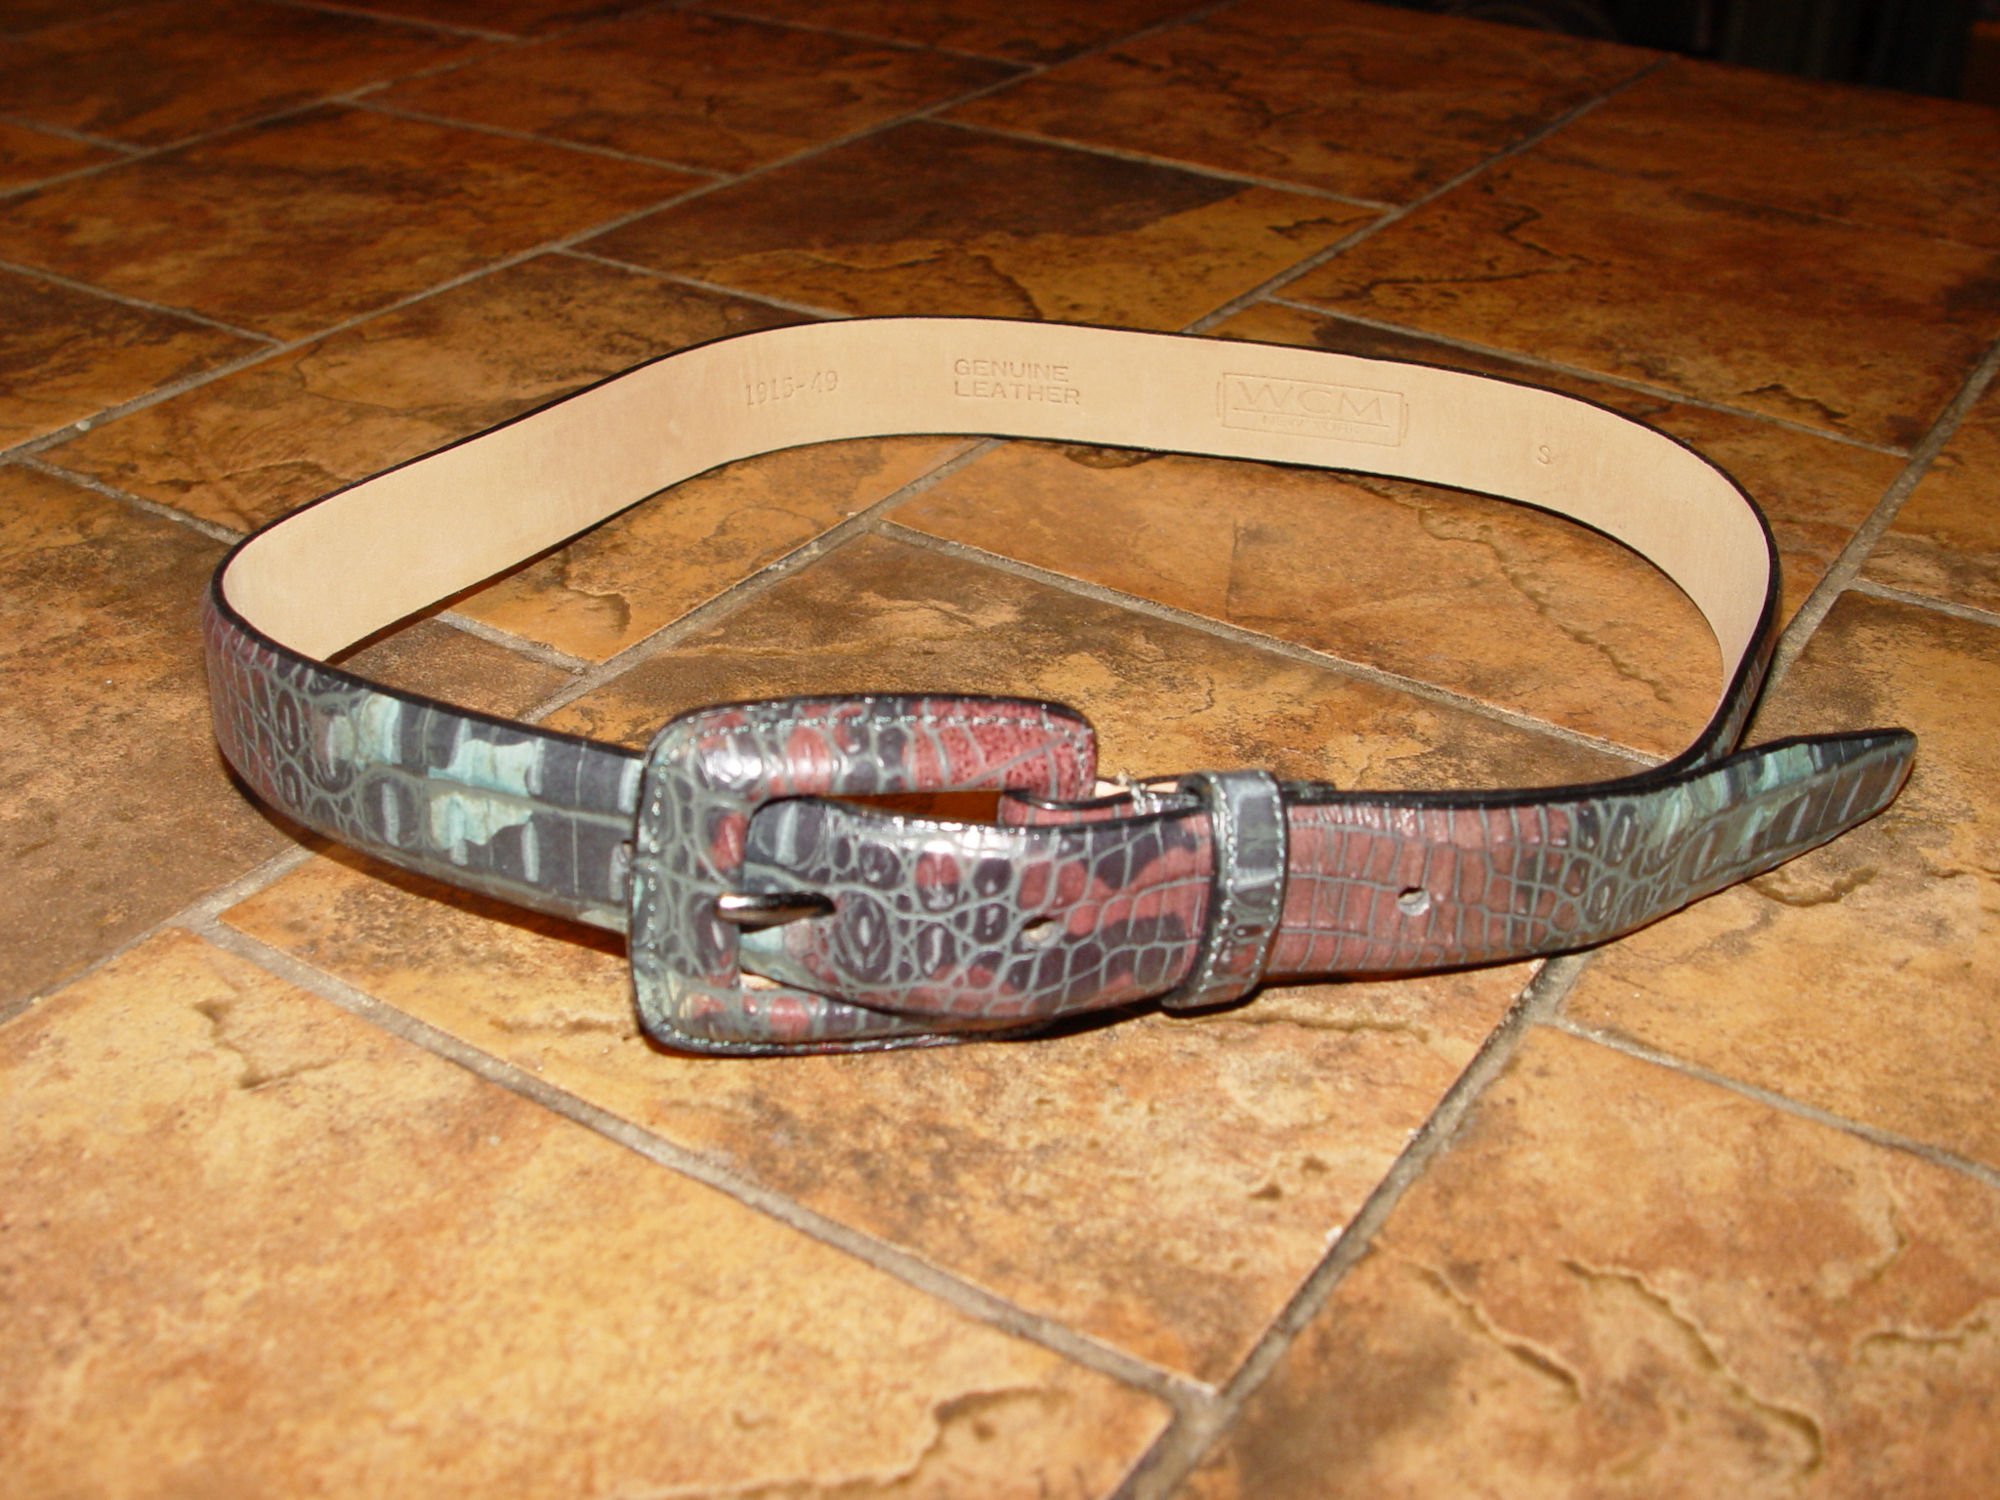 WCM Belt Green/Brown
                                        Snakeskin Patterned Leather NOS
                                        Belt Size S